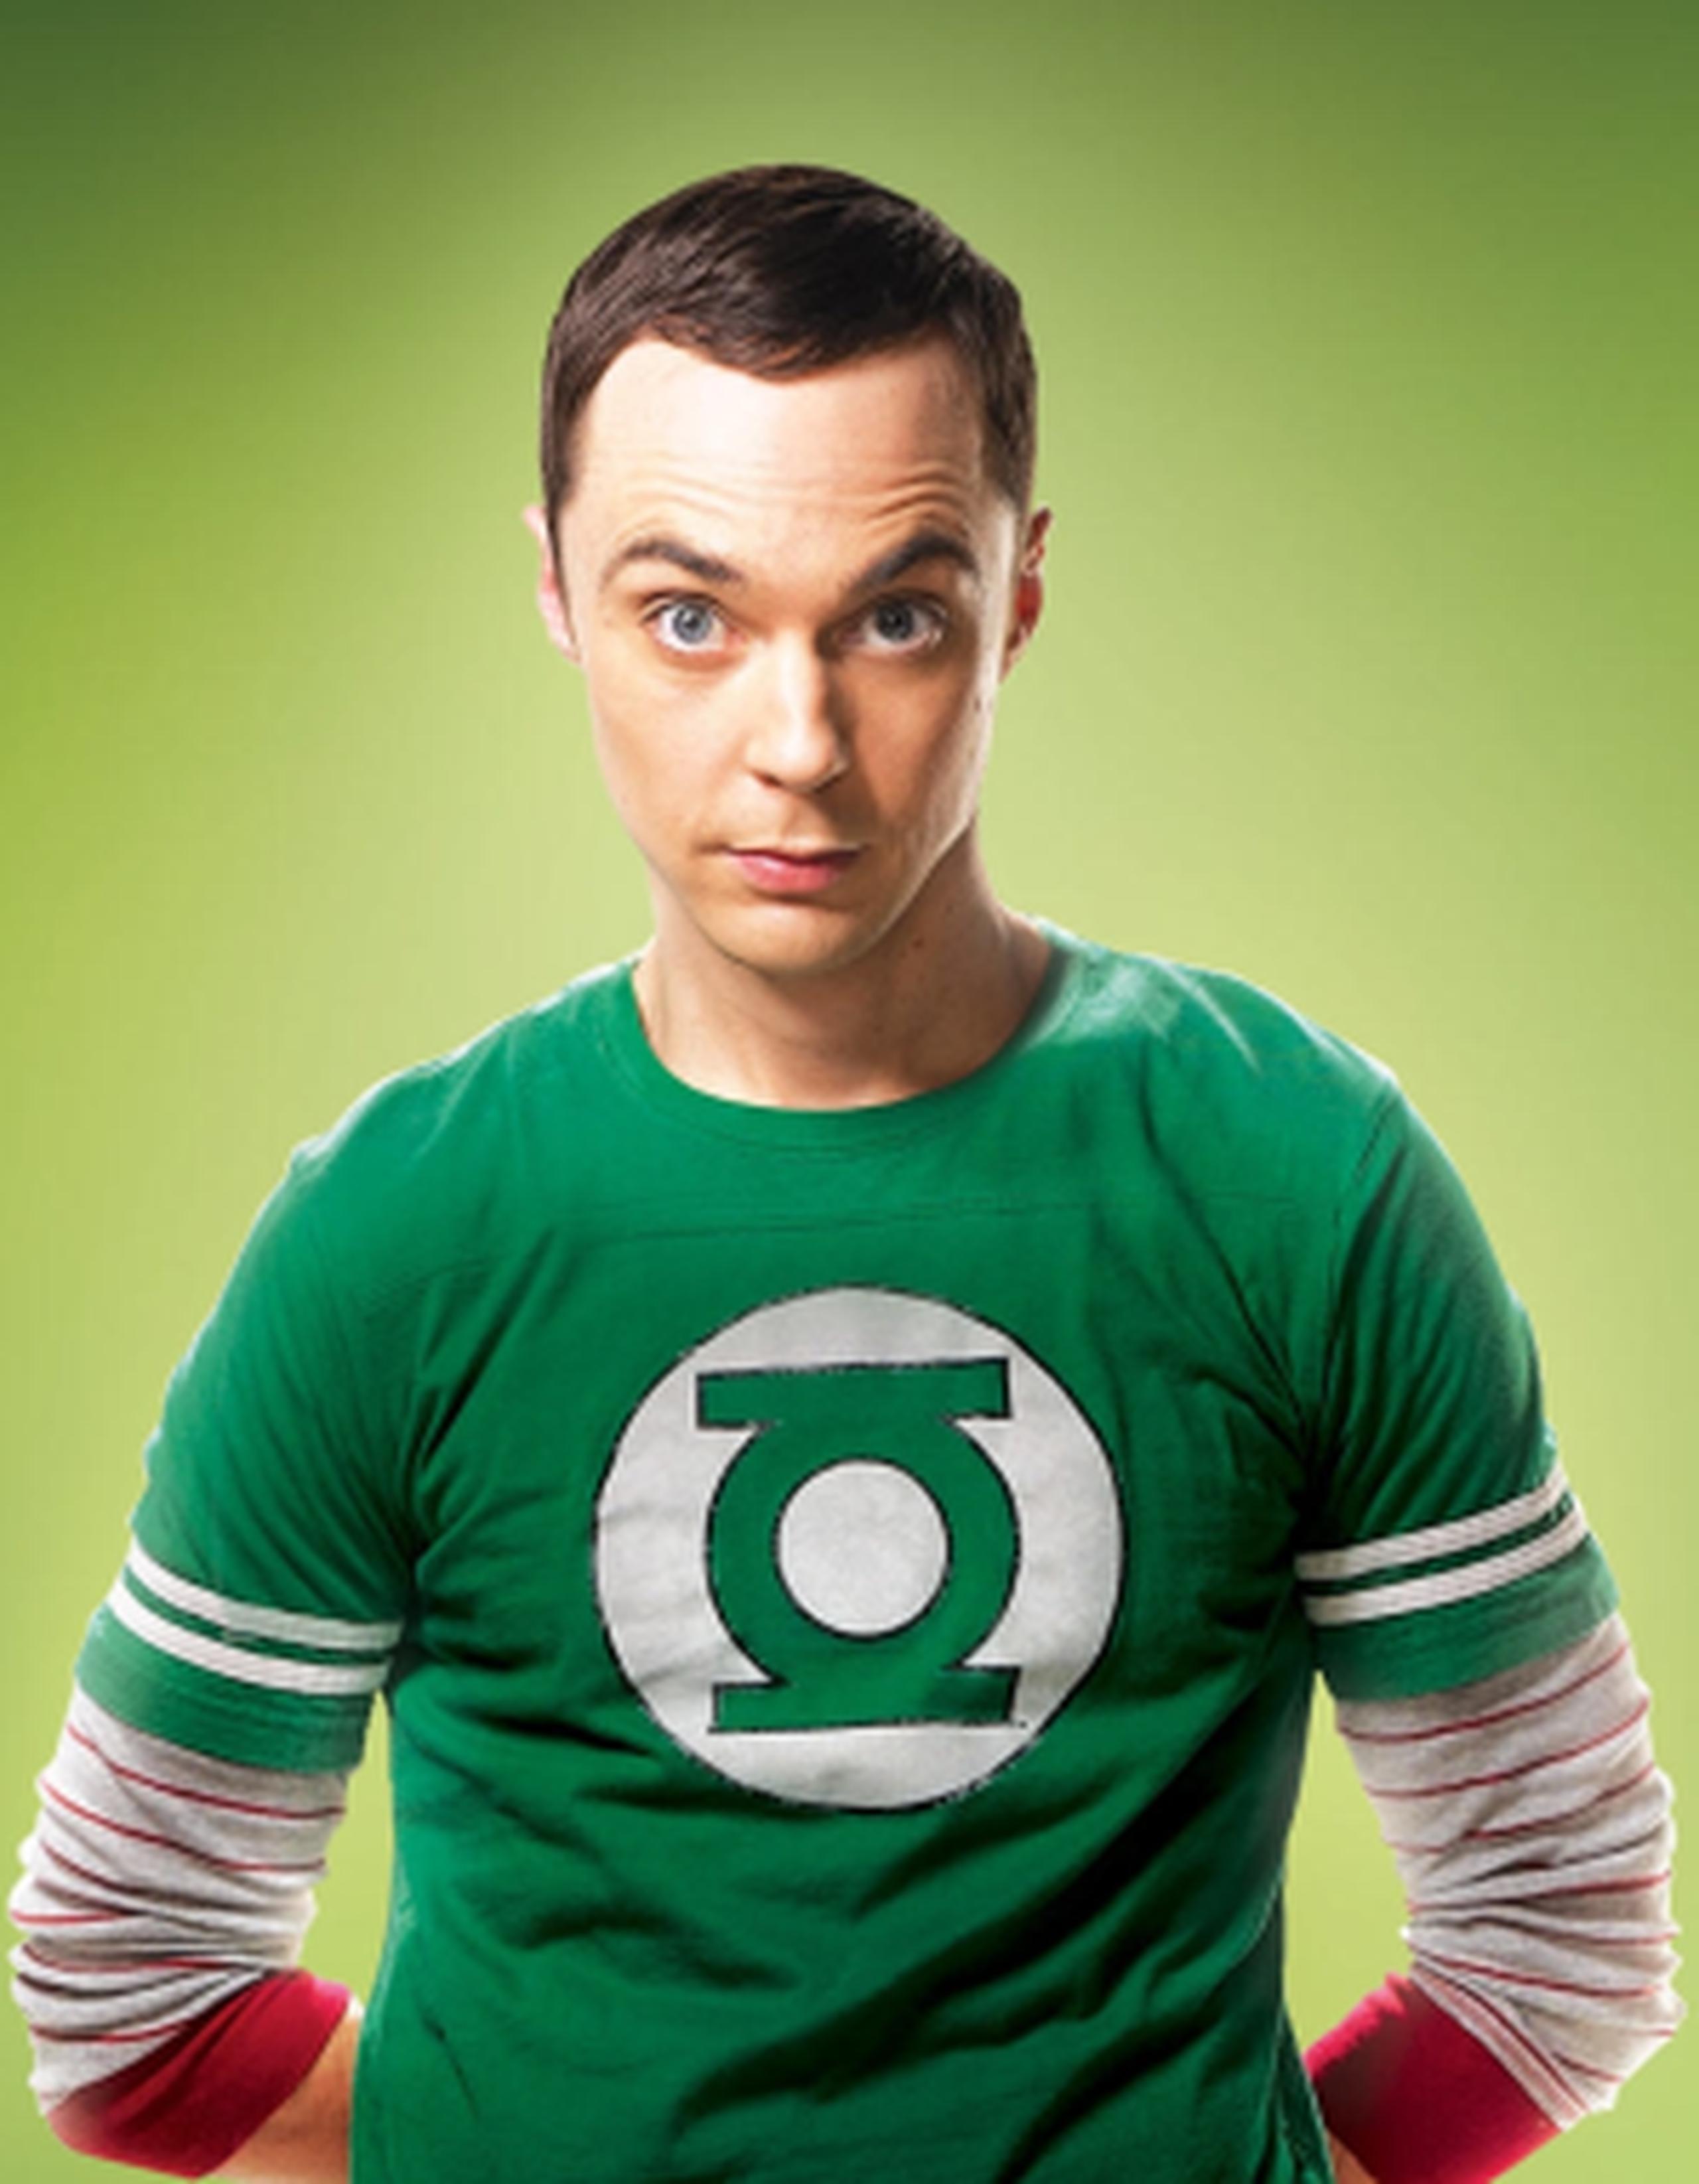 Sheldon Cooper del programa Big Bang Theory tiene rasgos característicos del síndrome de Asperger y es el personaje mas popular de su programa. (Archivo)